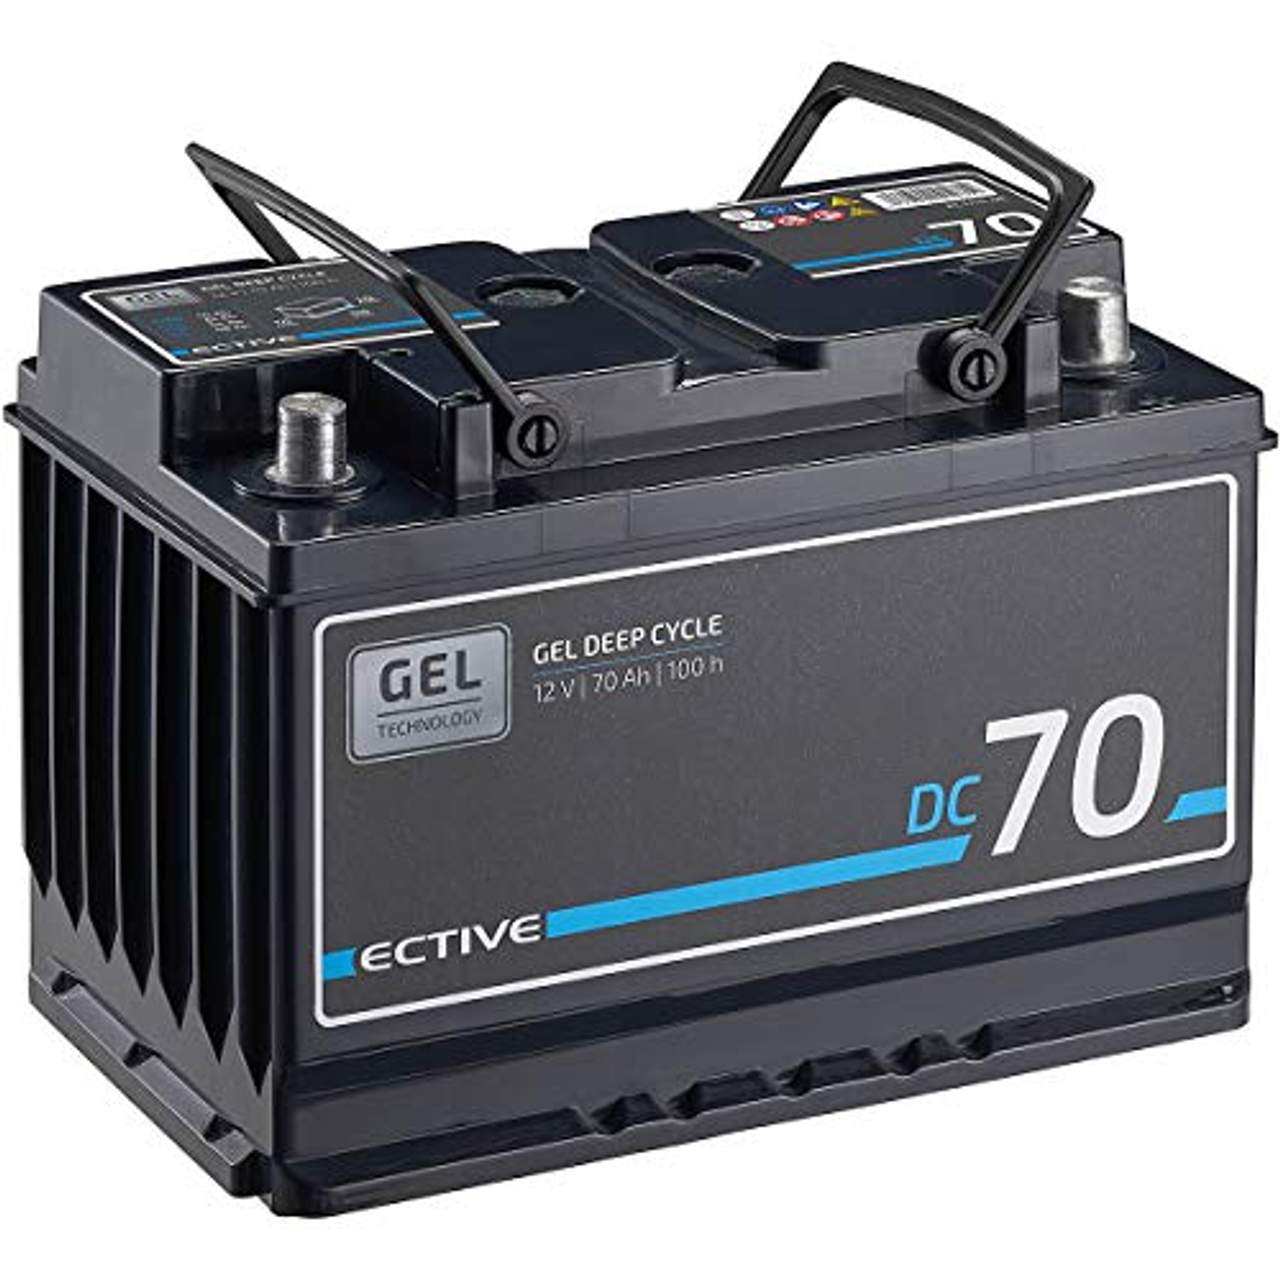 ECTIVE 70Ah 12V Gel Versorgungsbatterie DC 70 Gel Deep Cycle Solar-Batterie